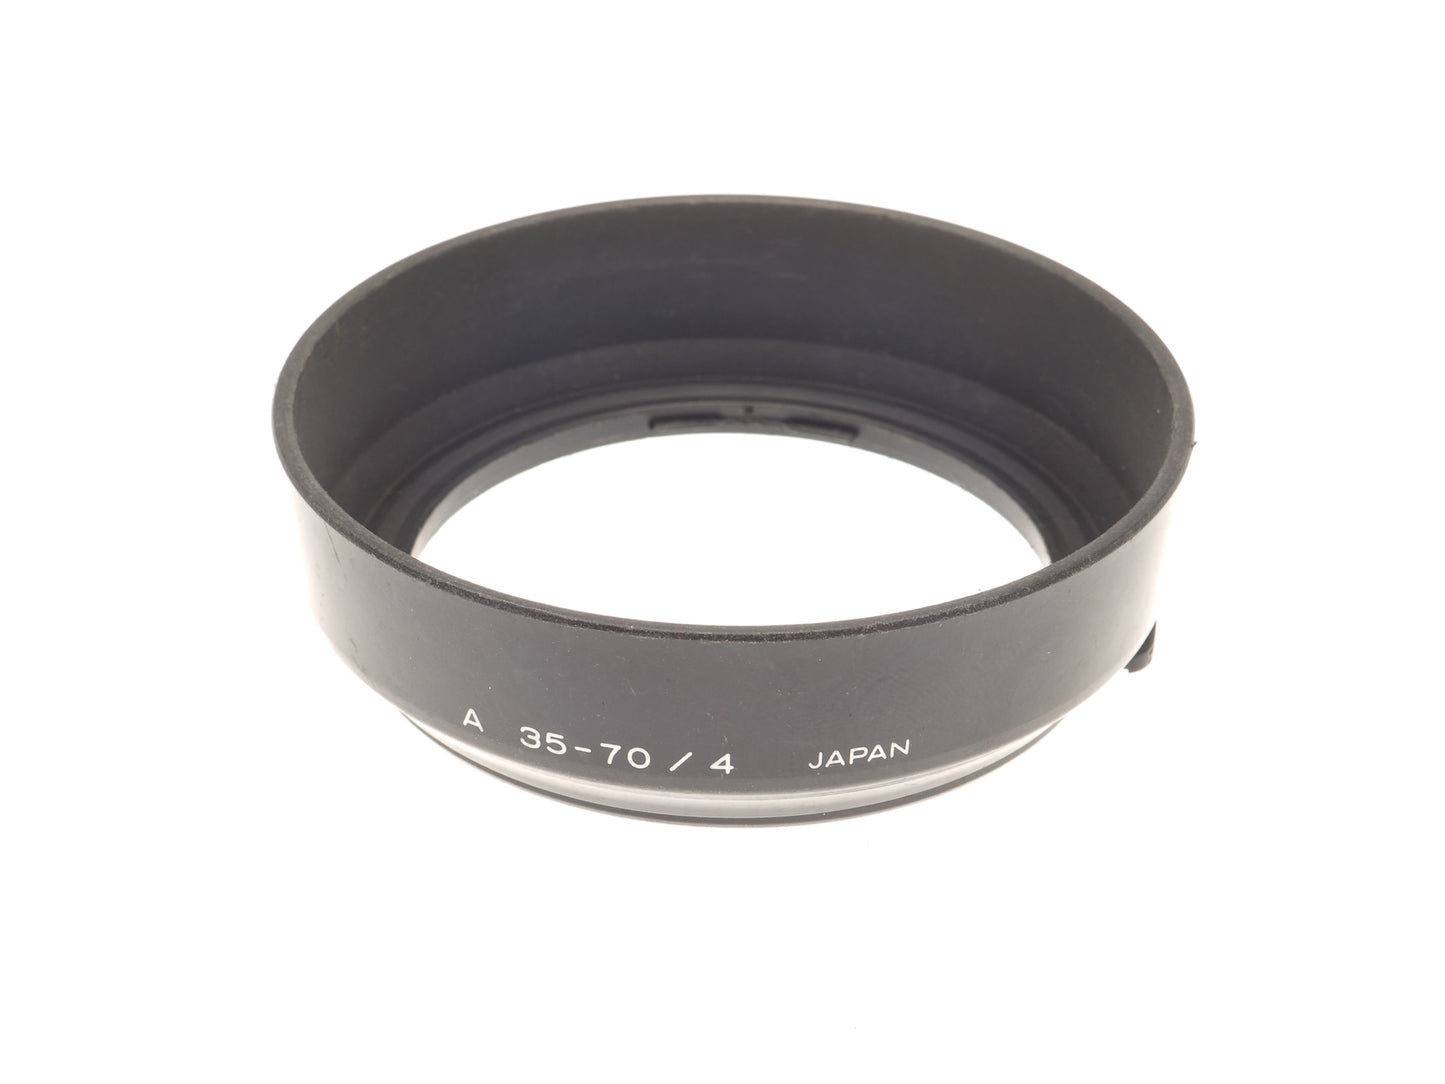 Minolta Lens hood for 35-70 f4 AF Zoom